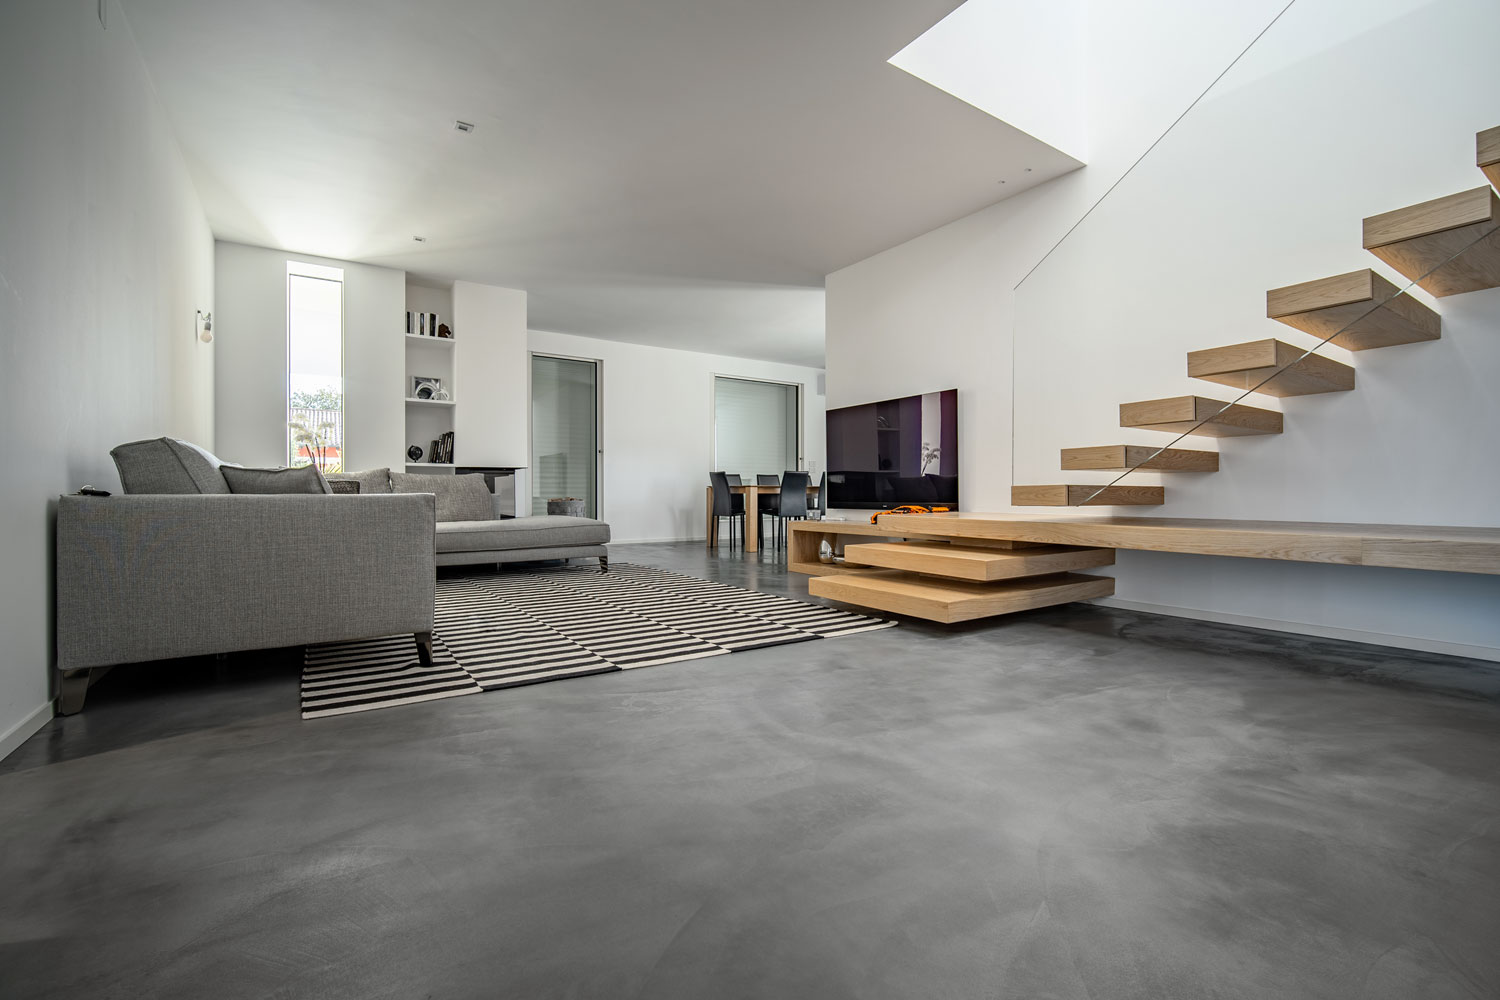 Microverlay - podea din beton rășinat cu grosime redusă - apartament privat - Studio Stocco Architetti